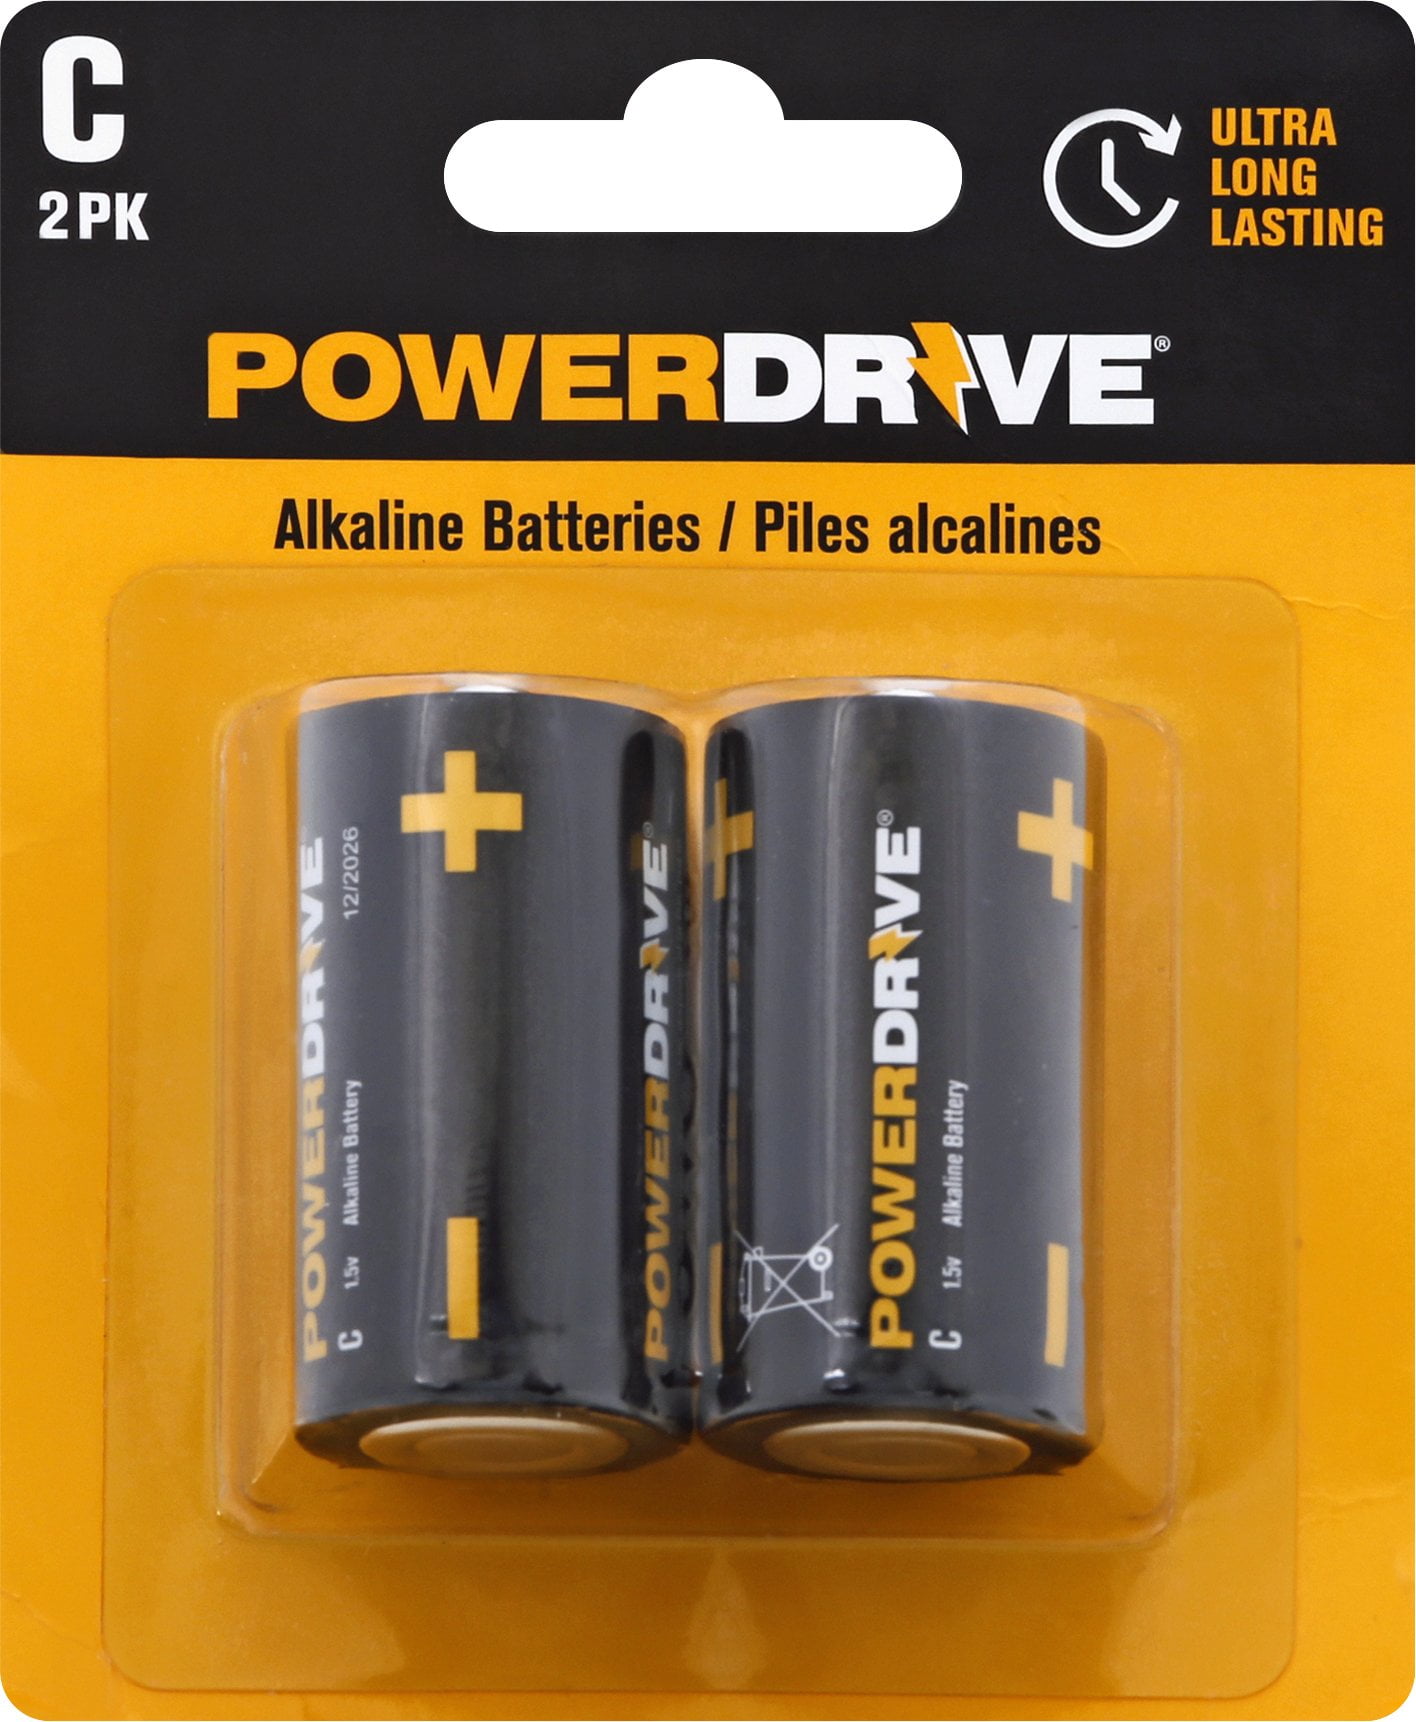 PKCELL C LR14 1.5V Ultra Alkaline Batteries Bulk 2 PCS